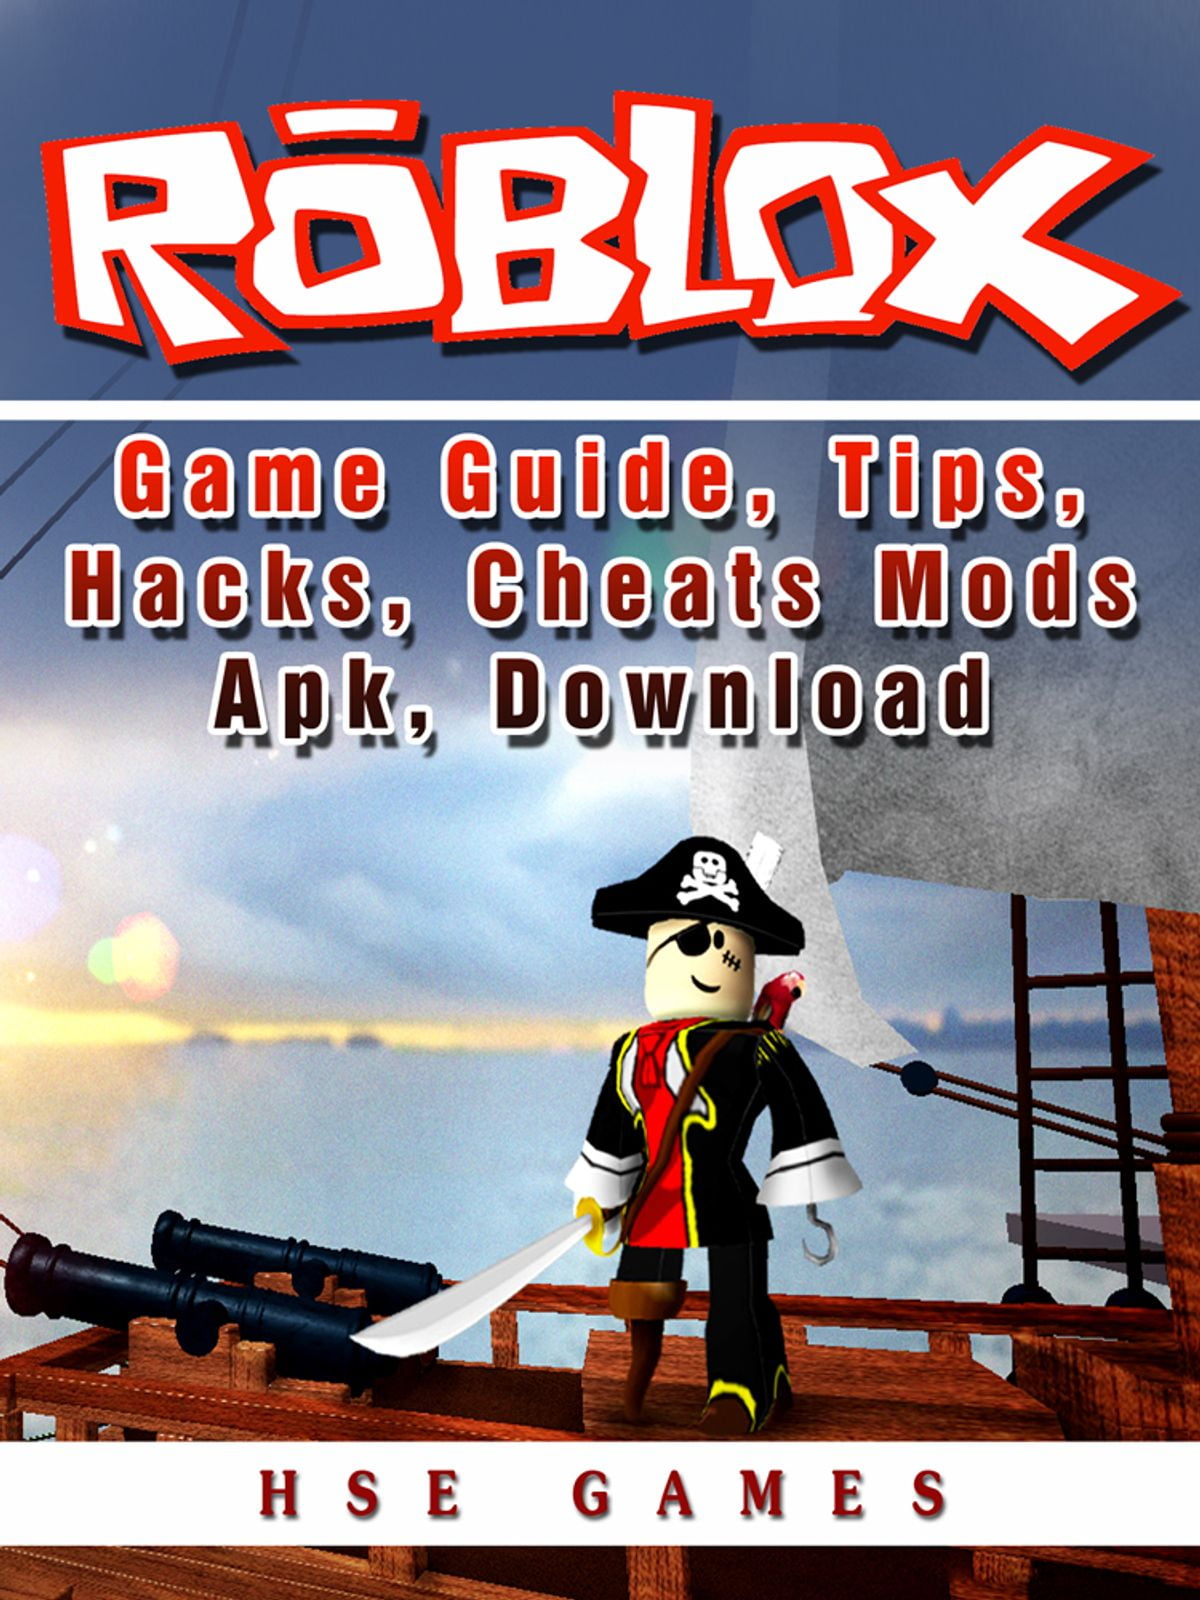 Roblox Game Guide Tips Hacks Cheats Mods Apk Download Ebook Walmart Com Walmart Com - download roblox apk apk download